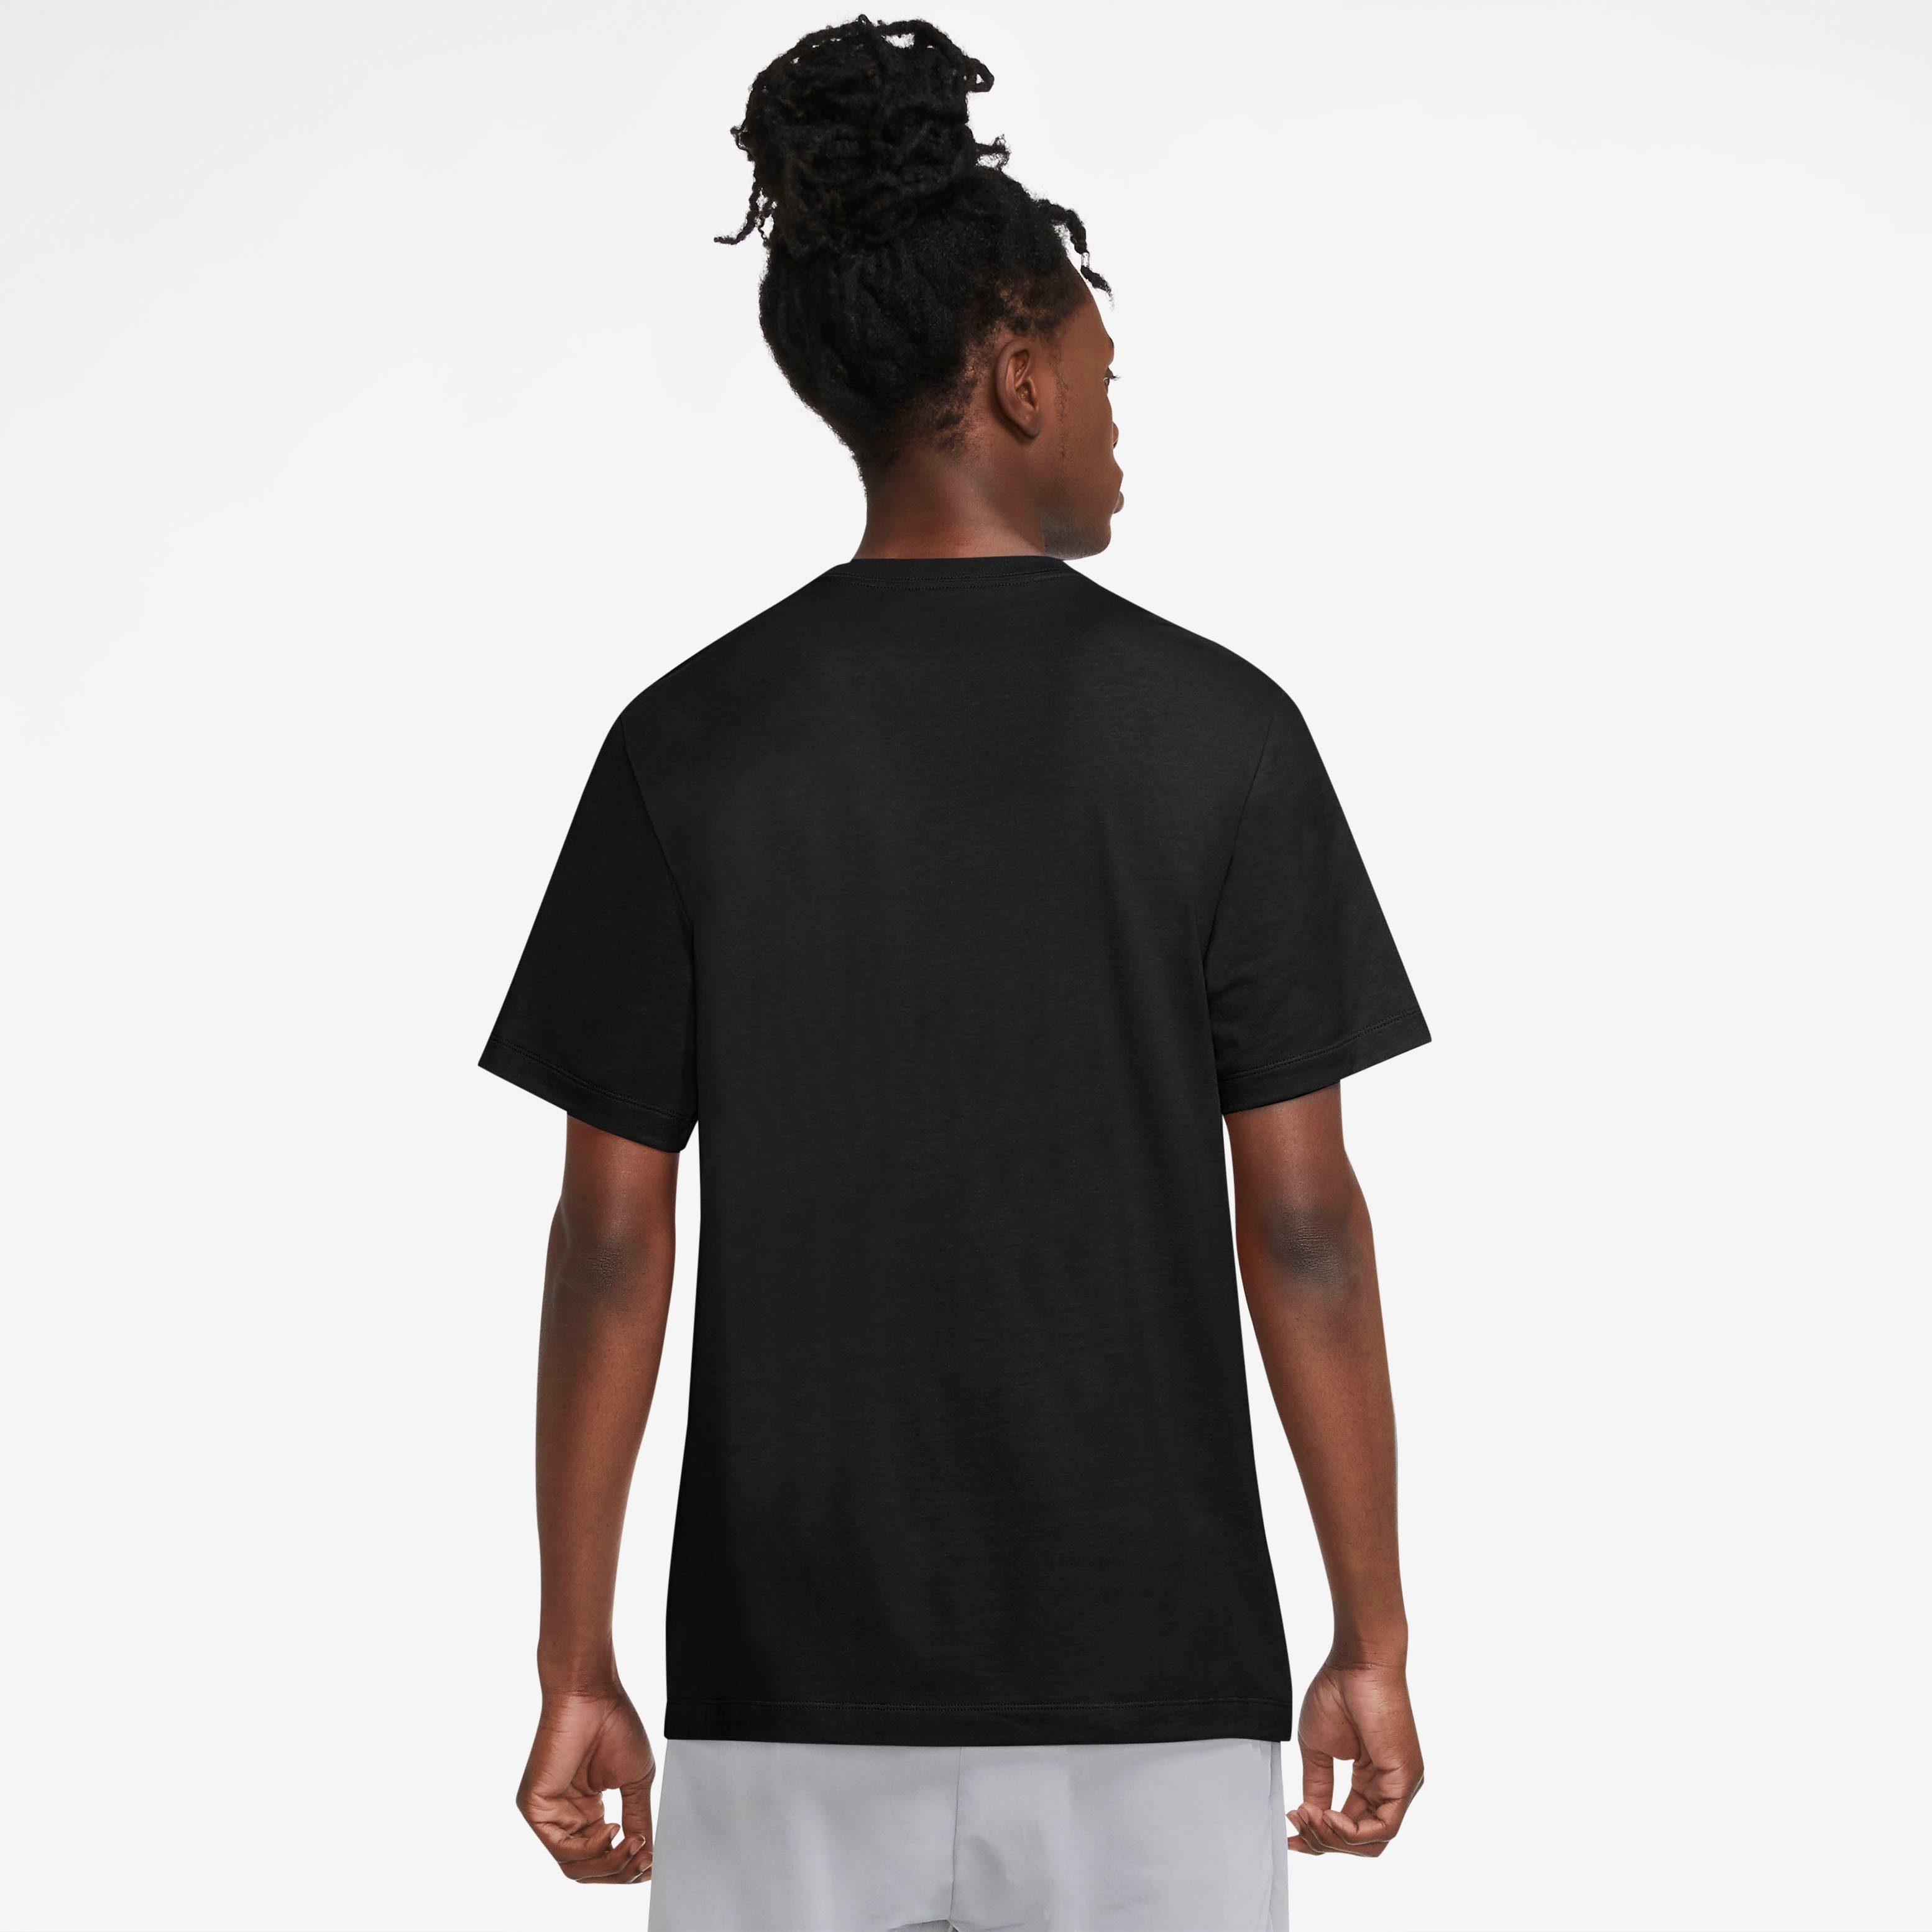 MEN'S T-Shirt SWOOSH schwarz Nike Sportswear T-SHIRT